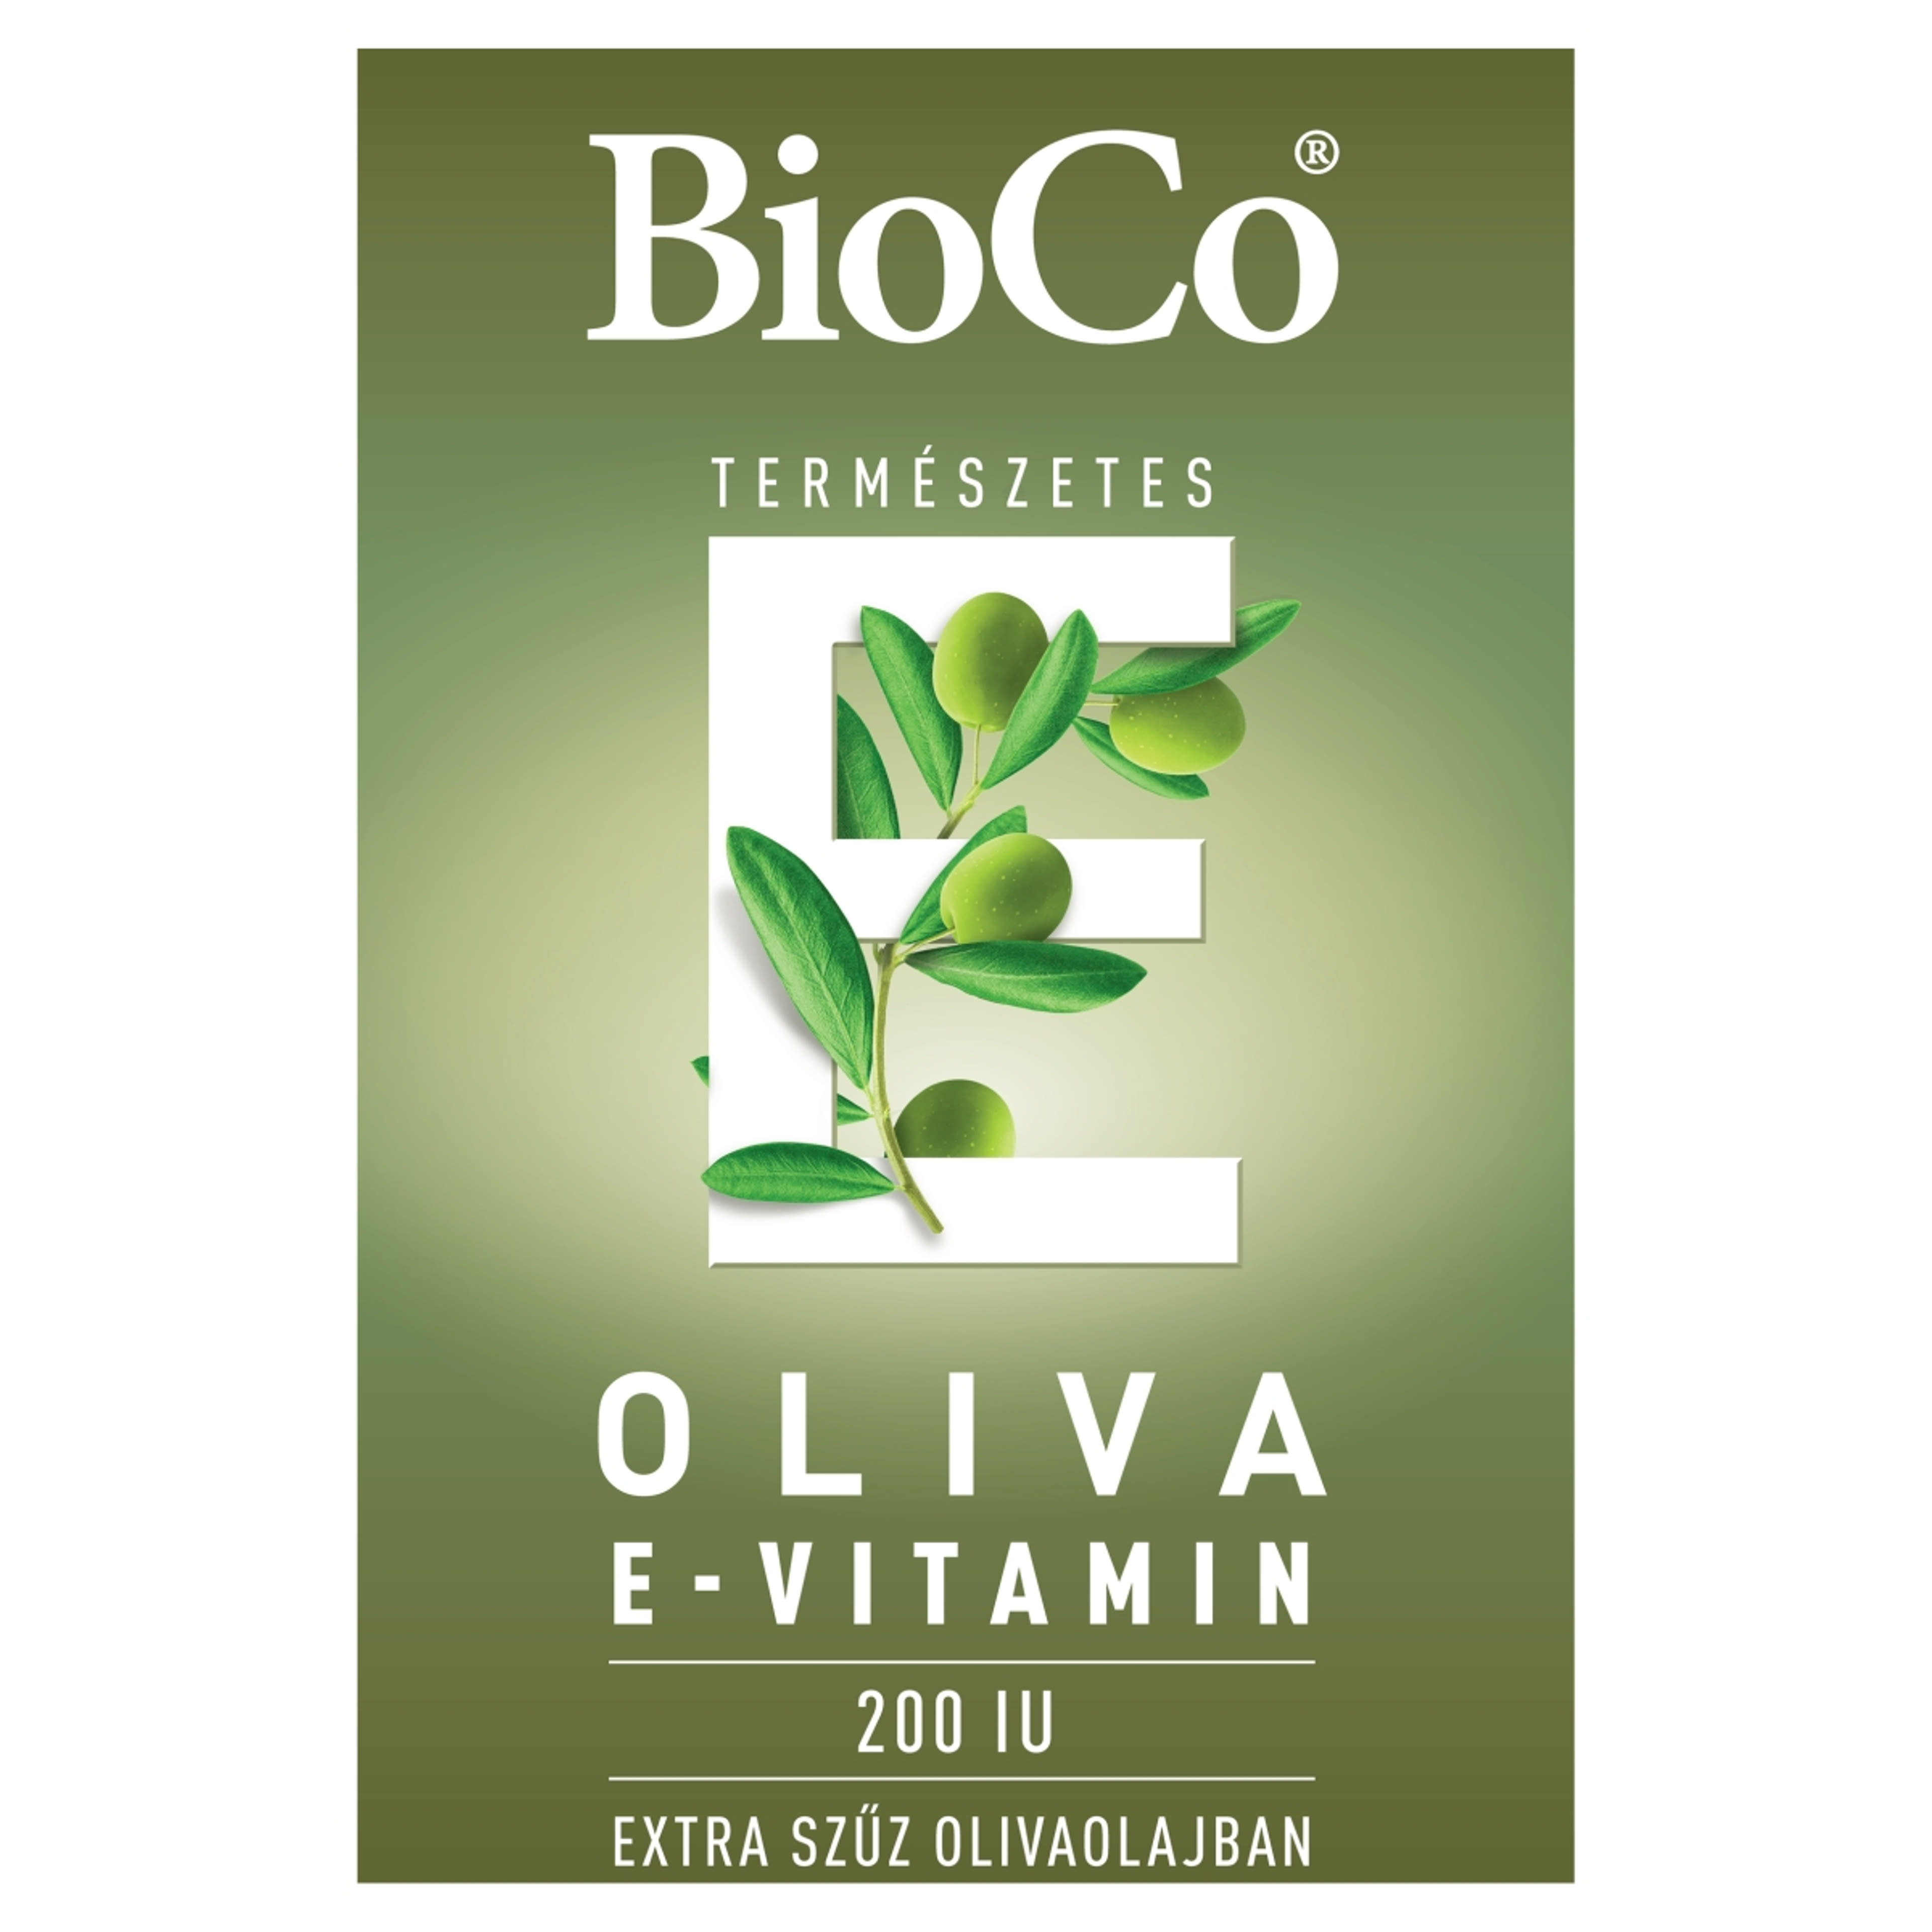 BioCo Oliva Természetes E-vitamin 200 IU étrend-kiegészítő lágyzselatin kapszula - 60 db